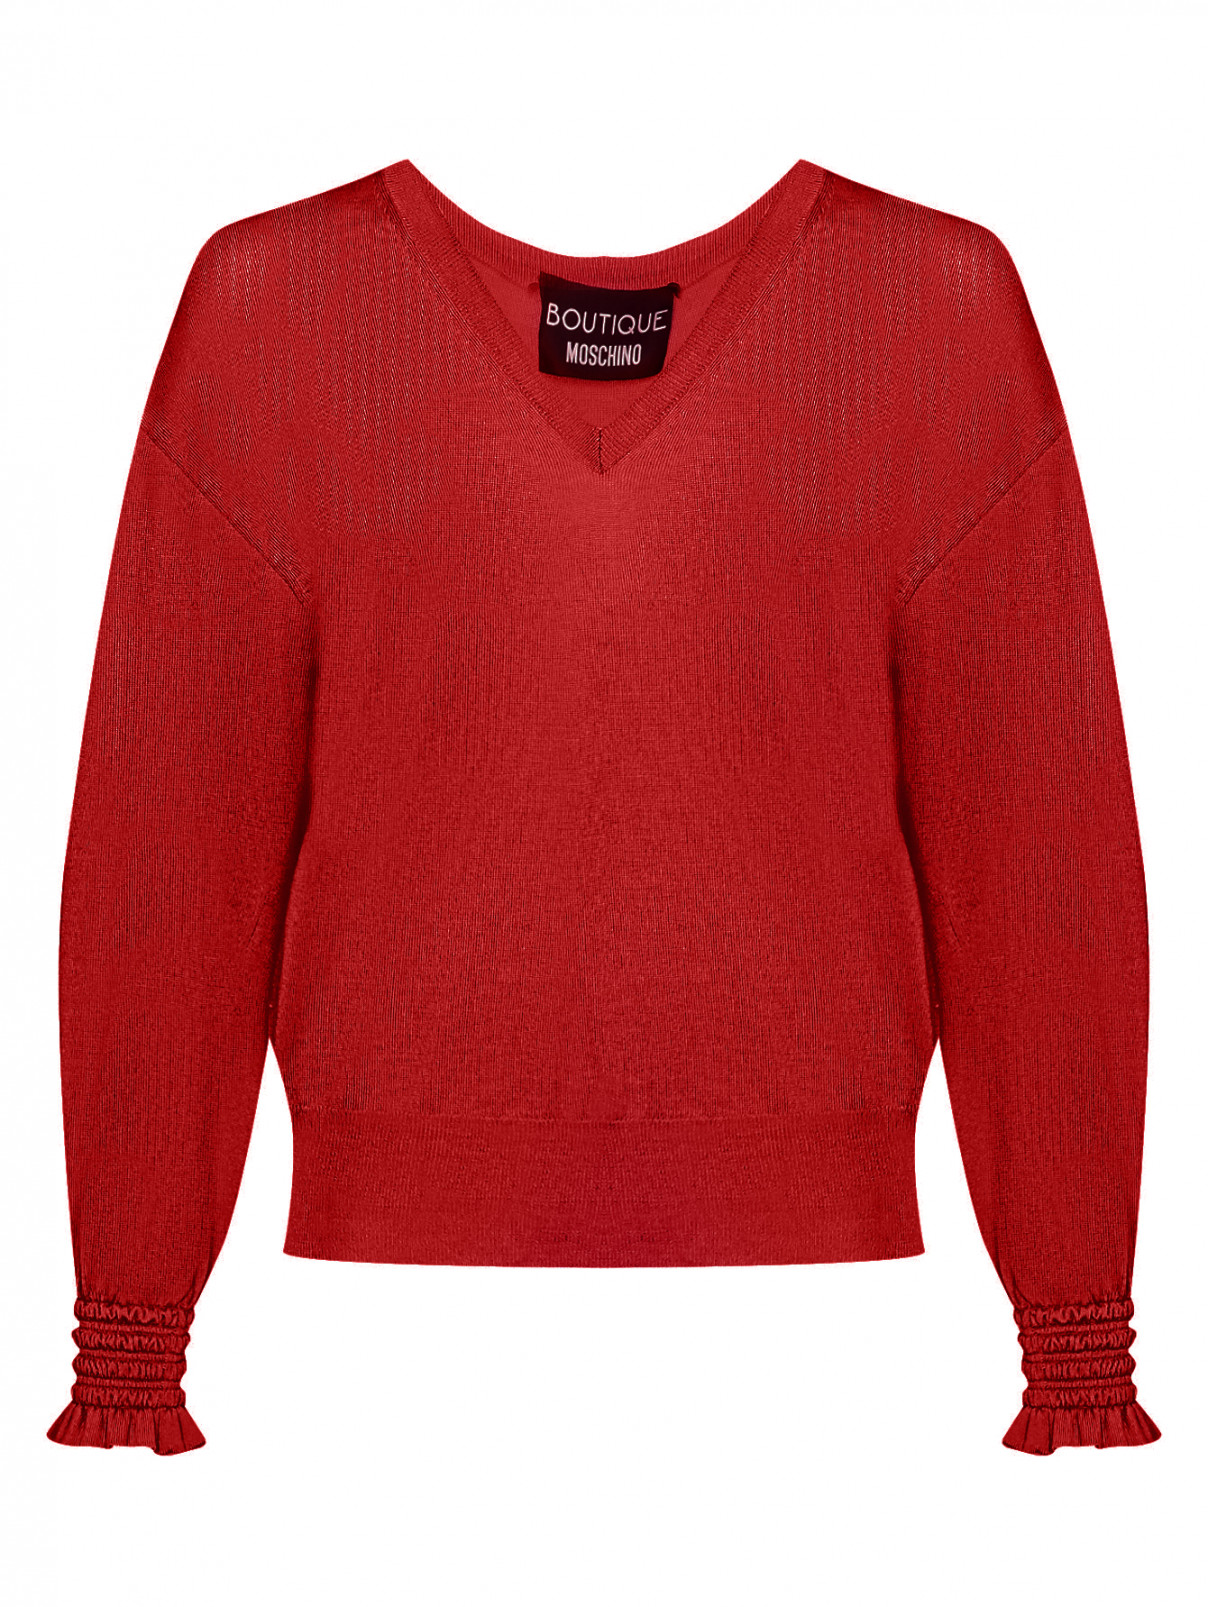 Джемпер из шерсти с V-образным вырезом Moschino Boutique  –  Общий вид  – Цвет:  Красный